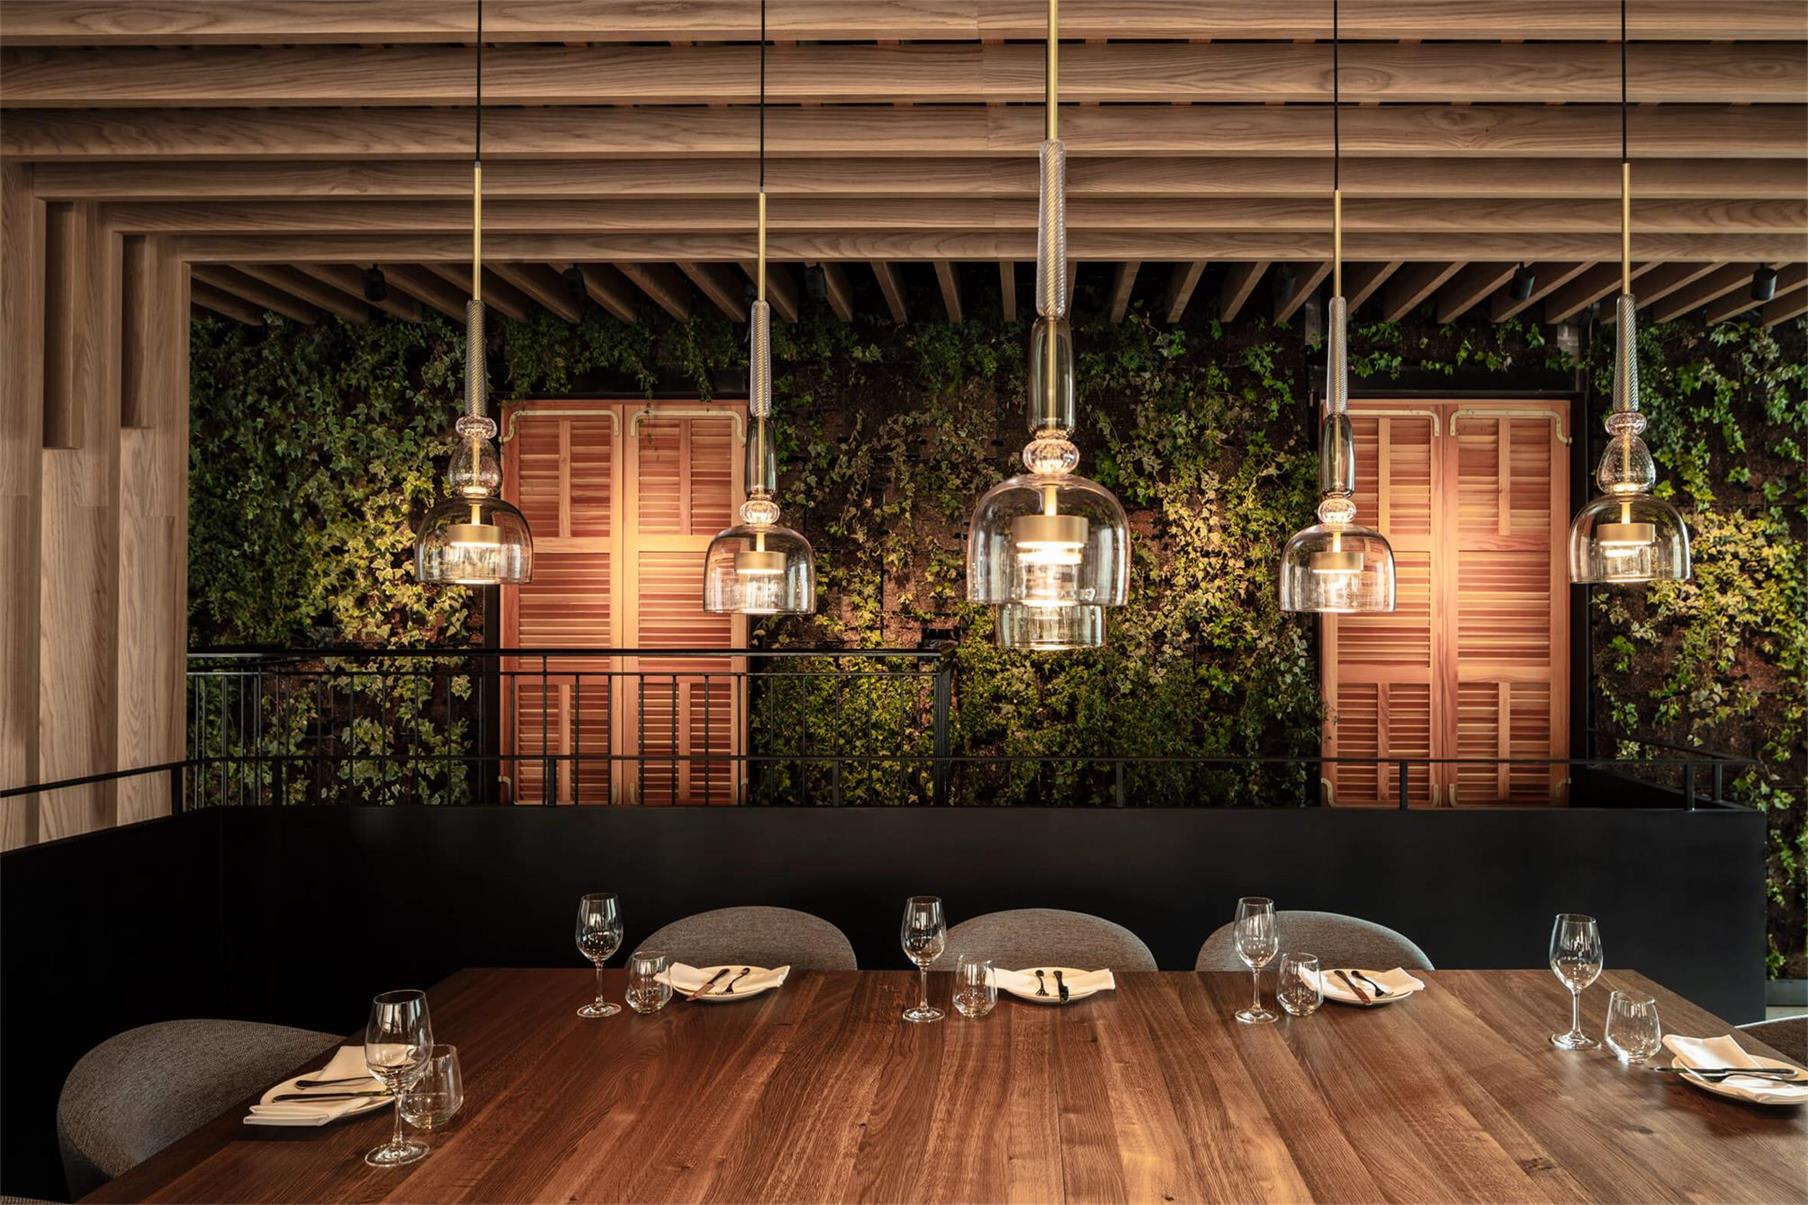 餐飲空間，特拉維夫，國外餐飲空間設計，Kimmel Eshkolo建築事務所，餐飲設計